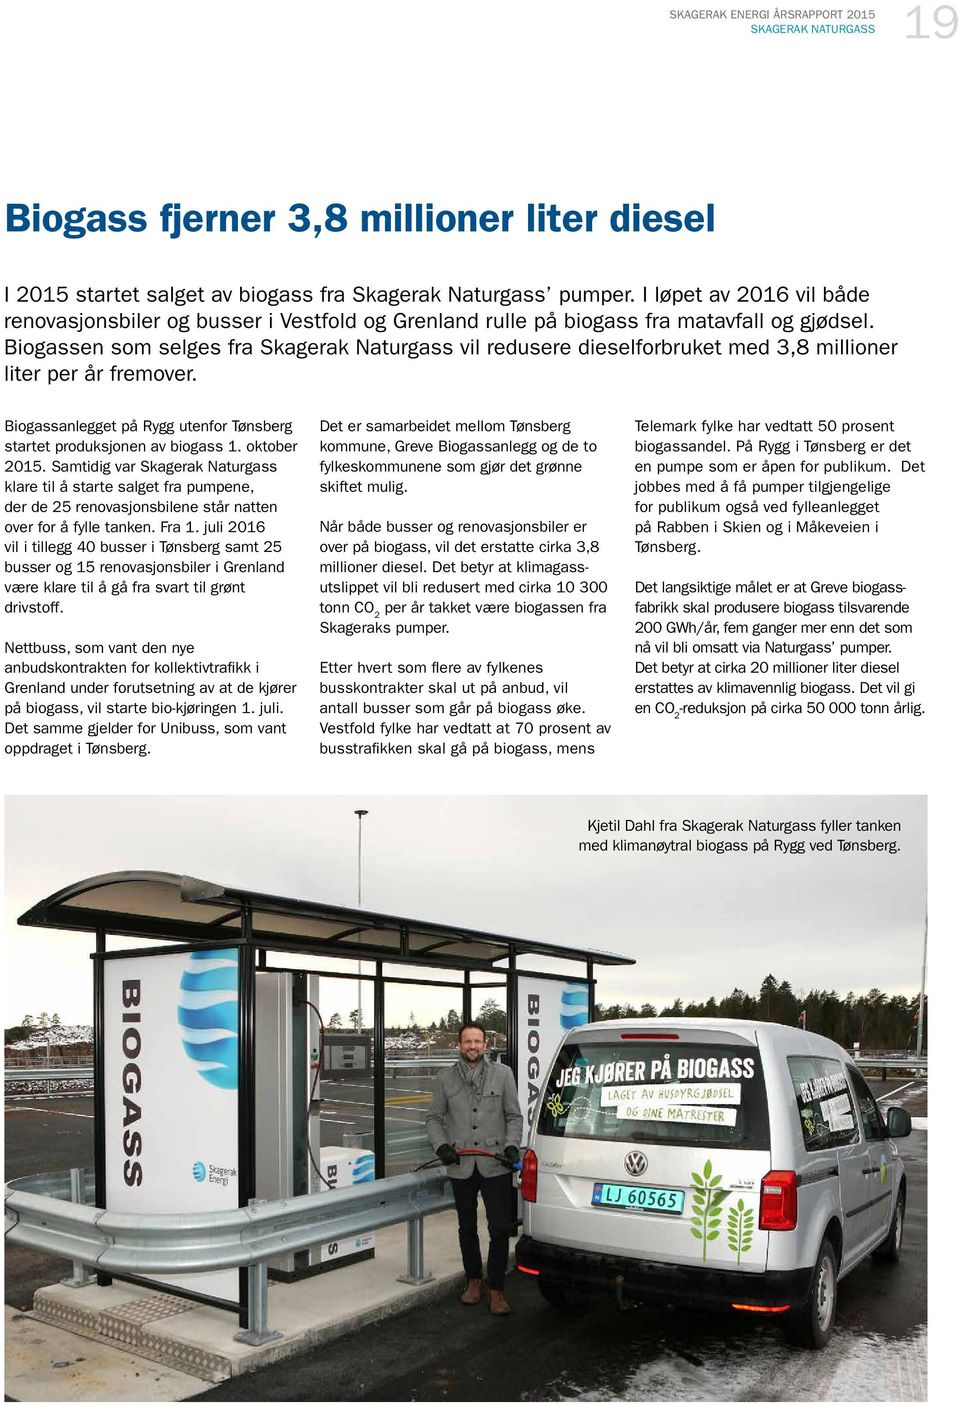 Biogassen som selges fra Skagerak Naturgass vil redusere dieselforbruket med 3,8 millioner liter per år fremover. Biogassanlegget på Rygg utenfor Tønsberg startet produksjonen av biogass 1.